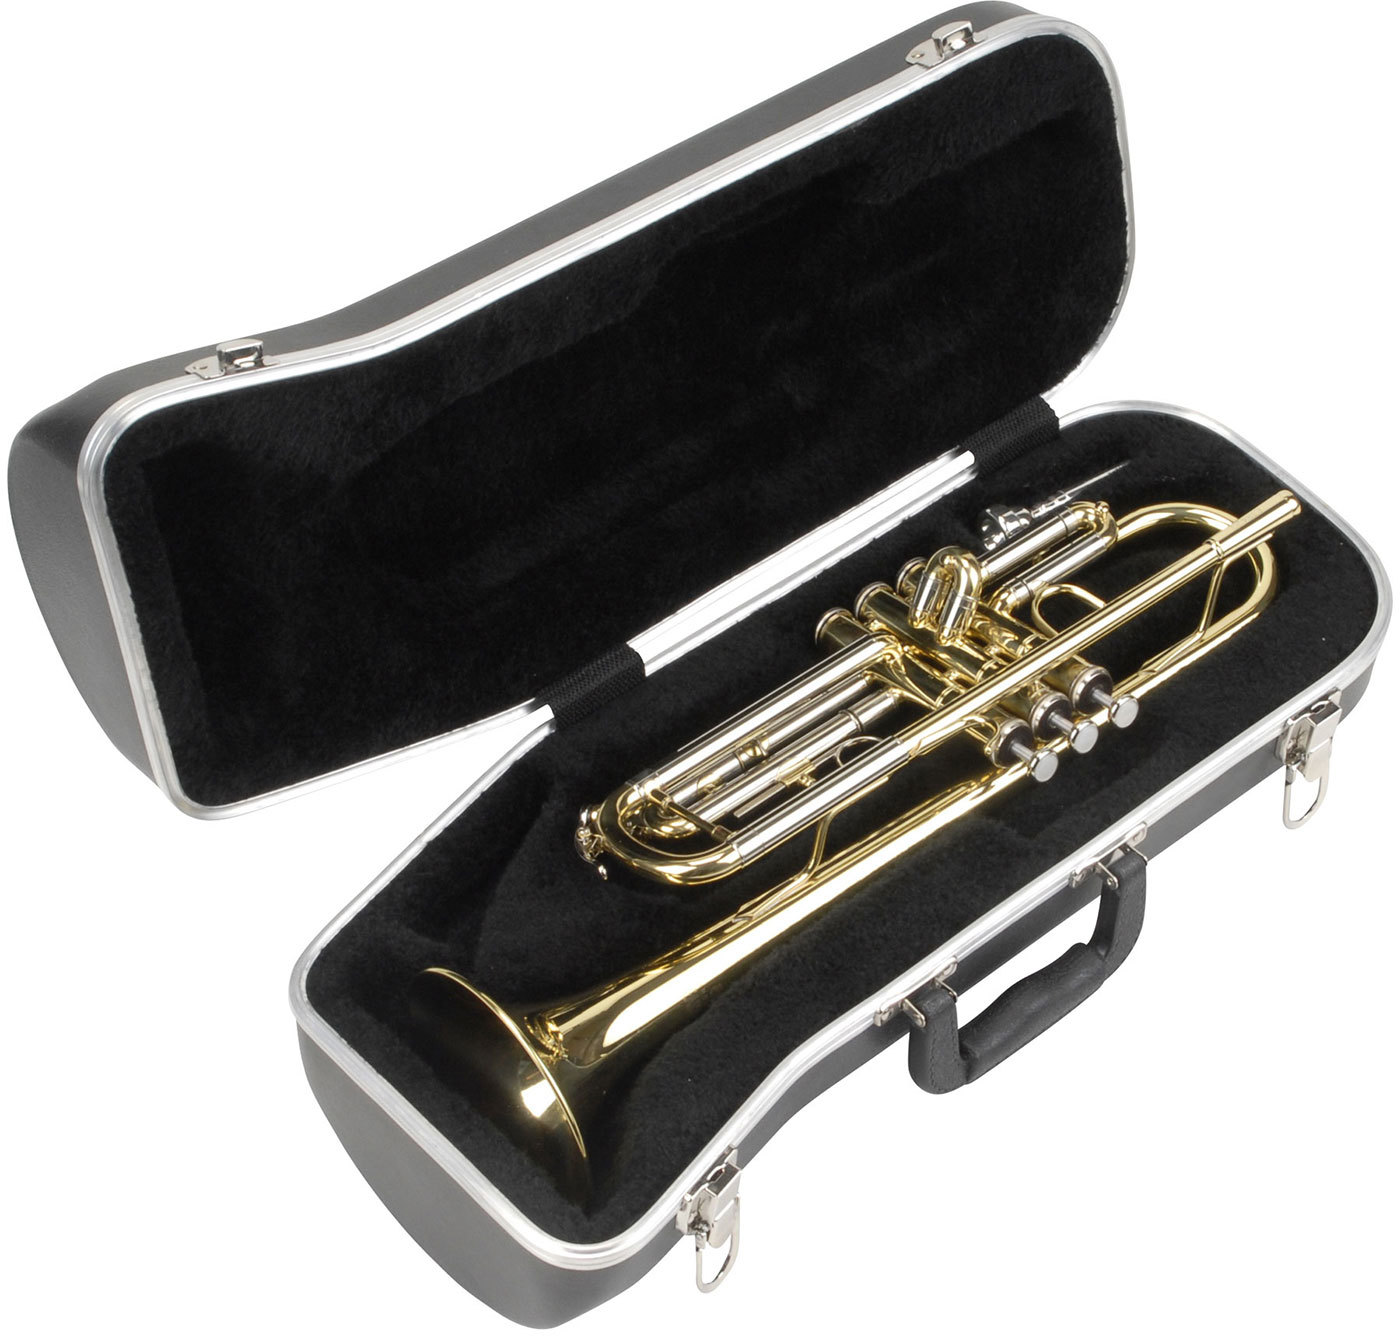 Чехлы для музыкальных инструментов. SKB 130 кейс для трубы, контурный. SKB 130 кейс для трубы. Чехол для трубы SKB. SKB Case для скрипки.